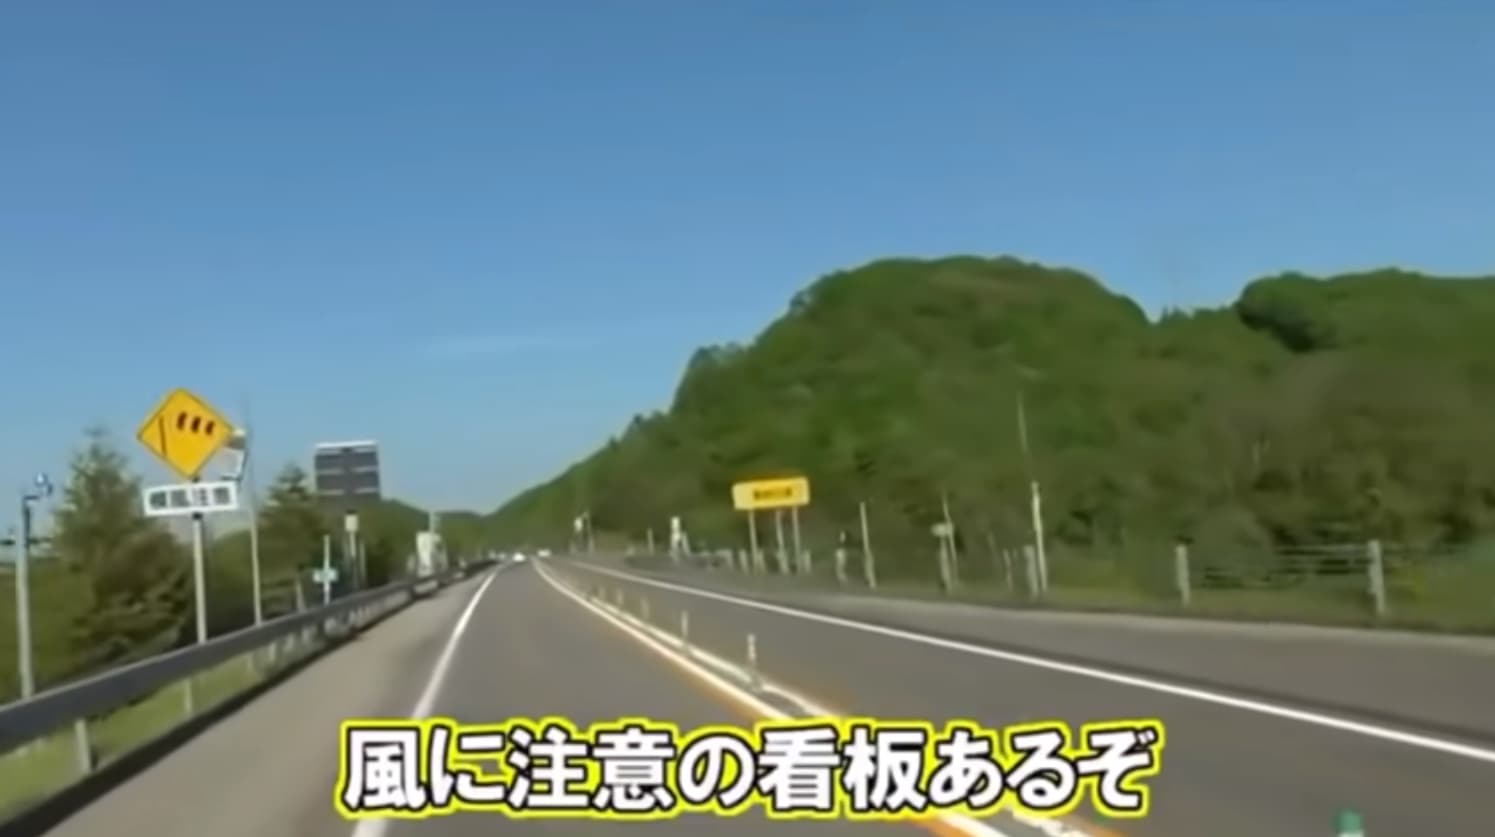 オタク5人のキャンピングカー横転事故の概要・動画